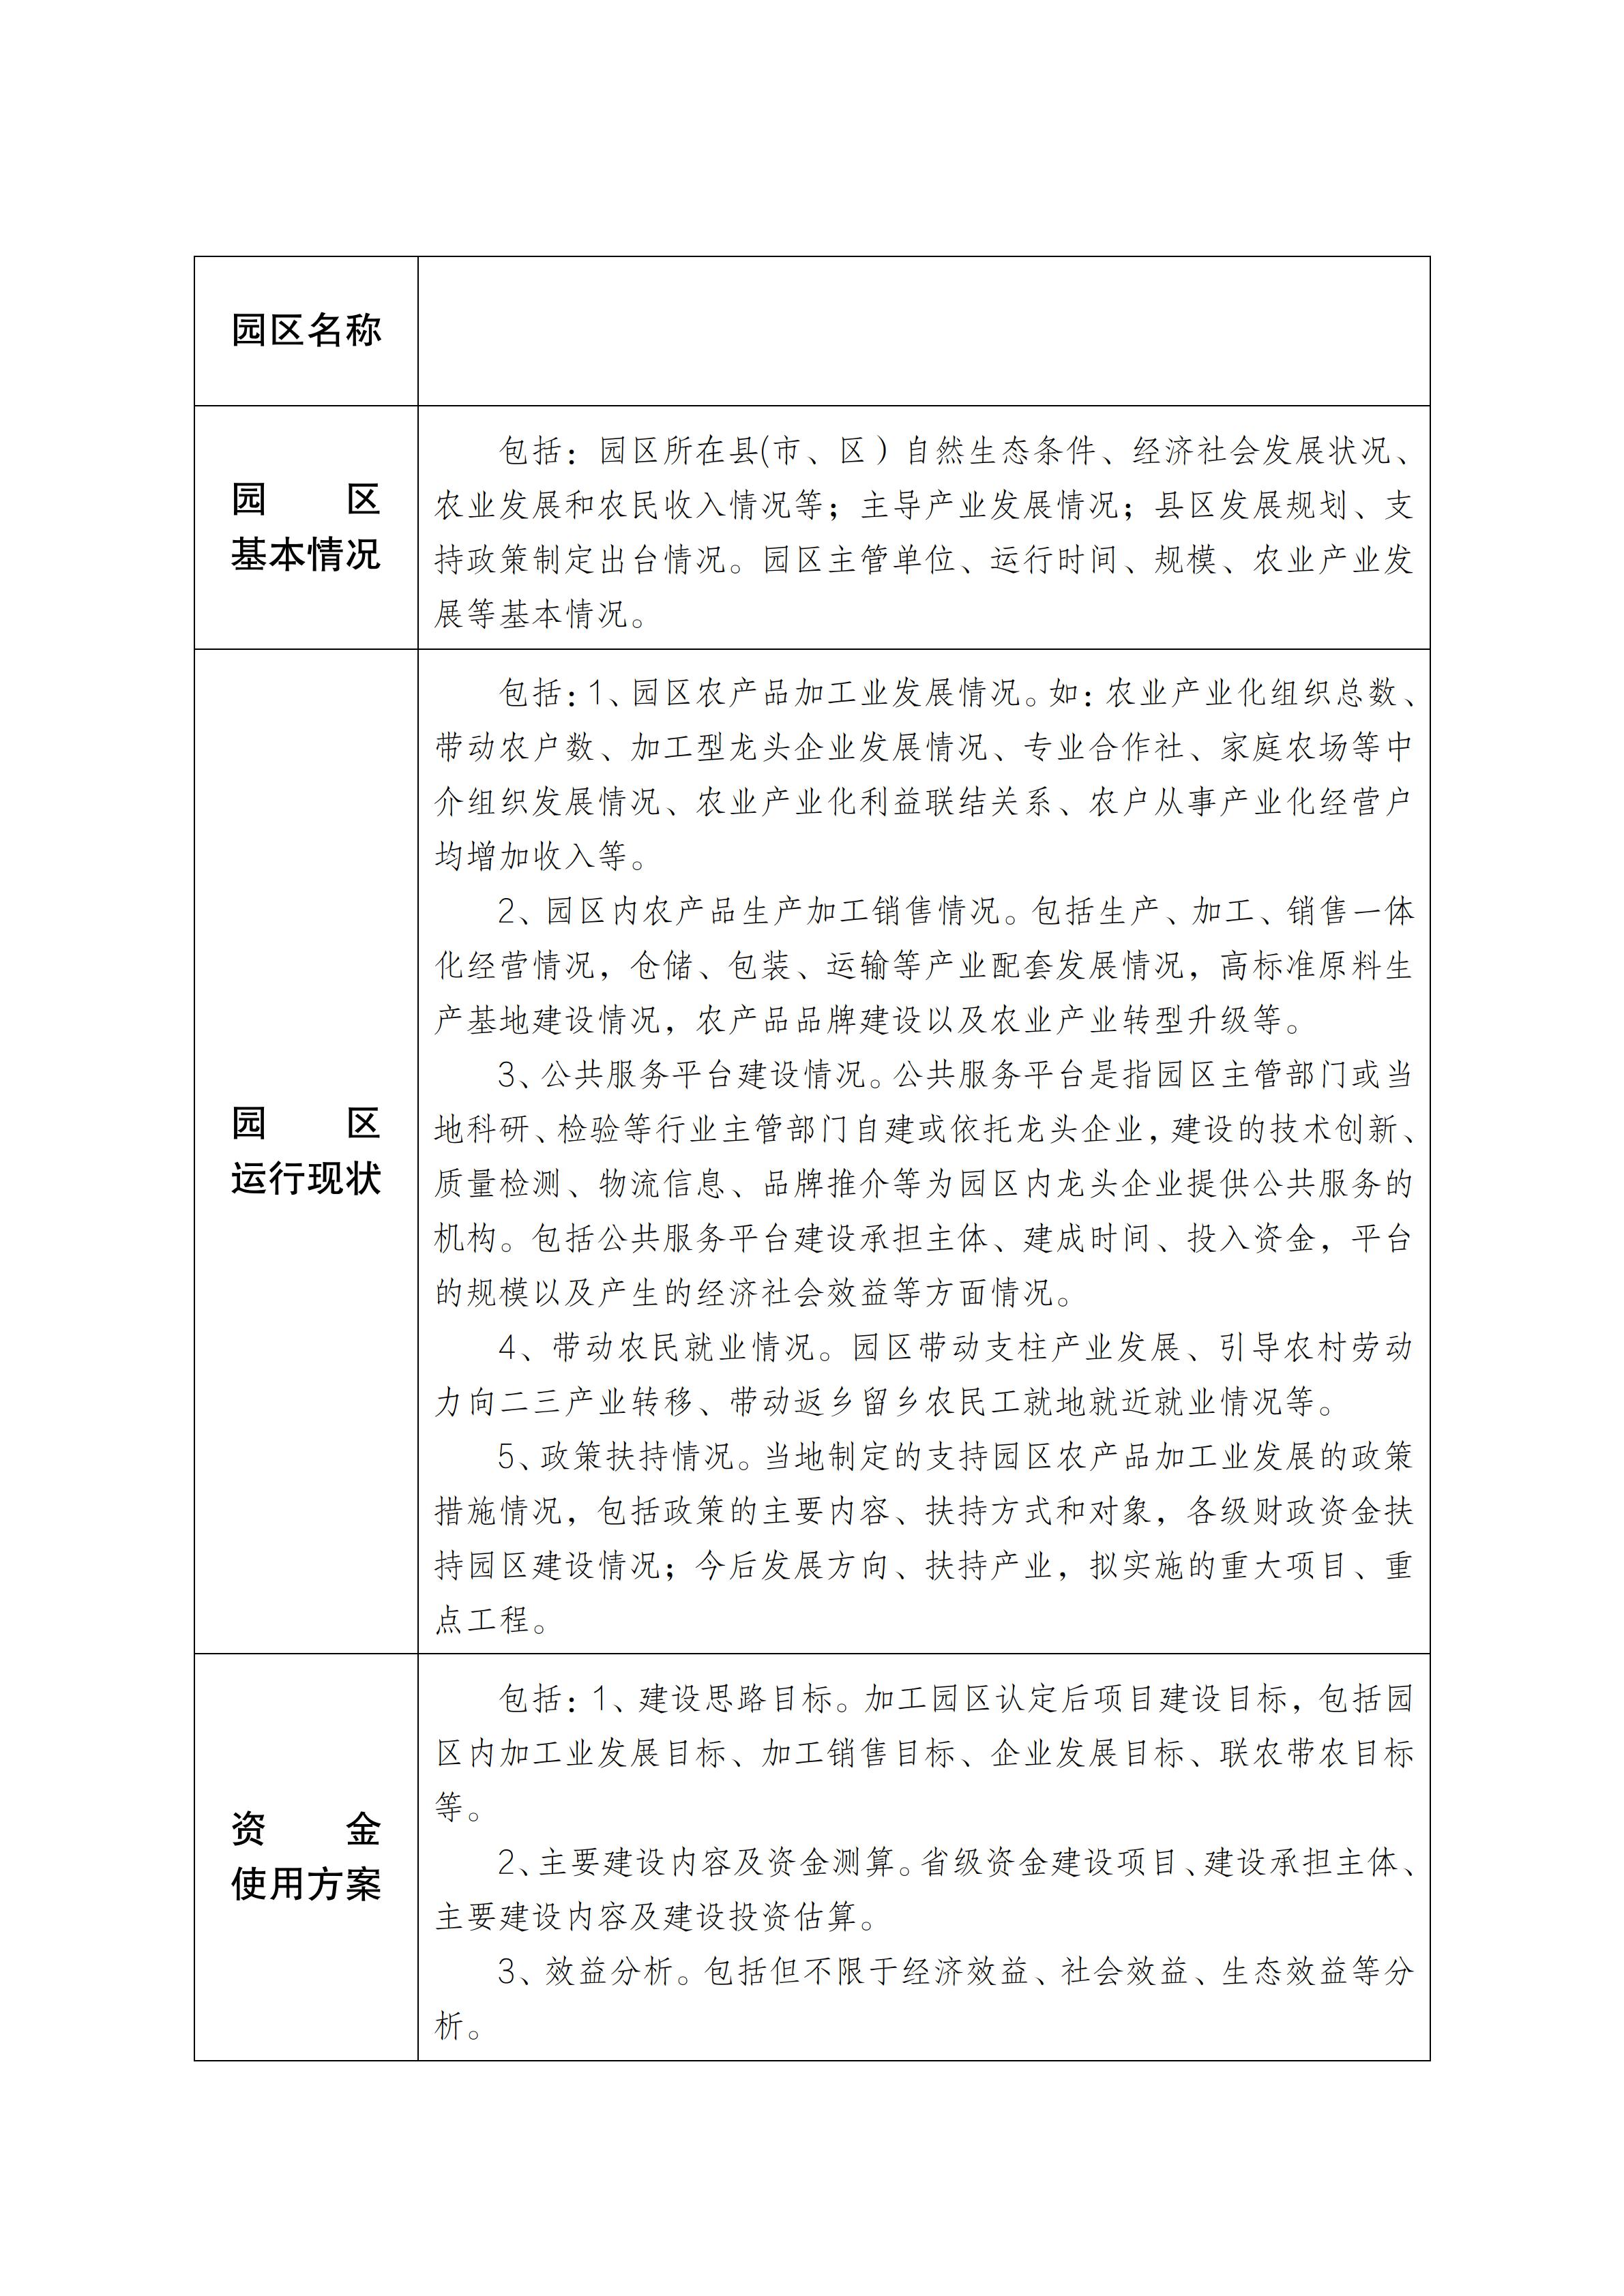 陕西省省级农产品加工园区申报书_02.jpg